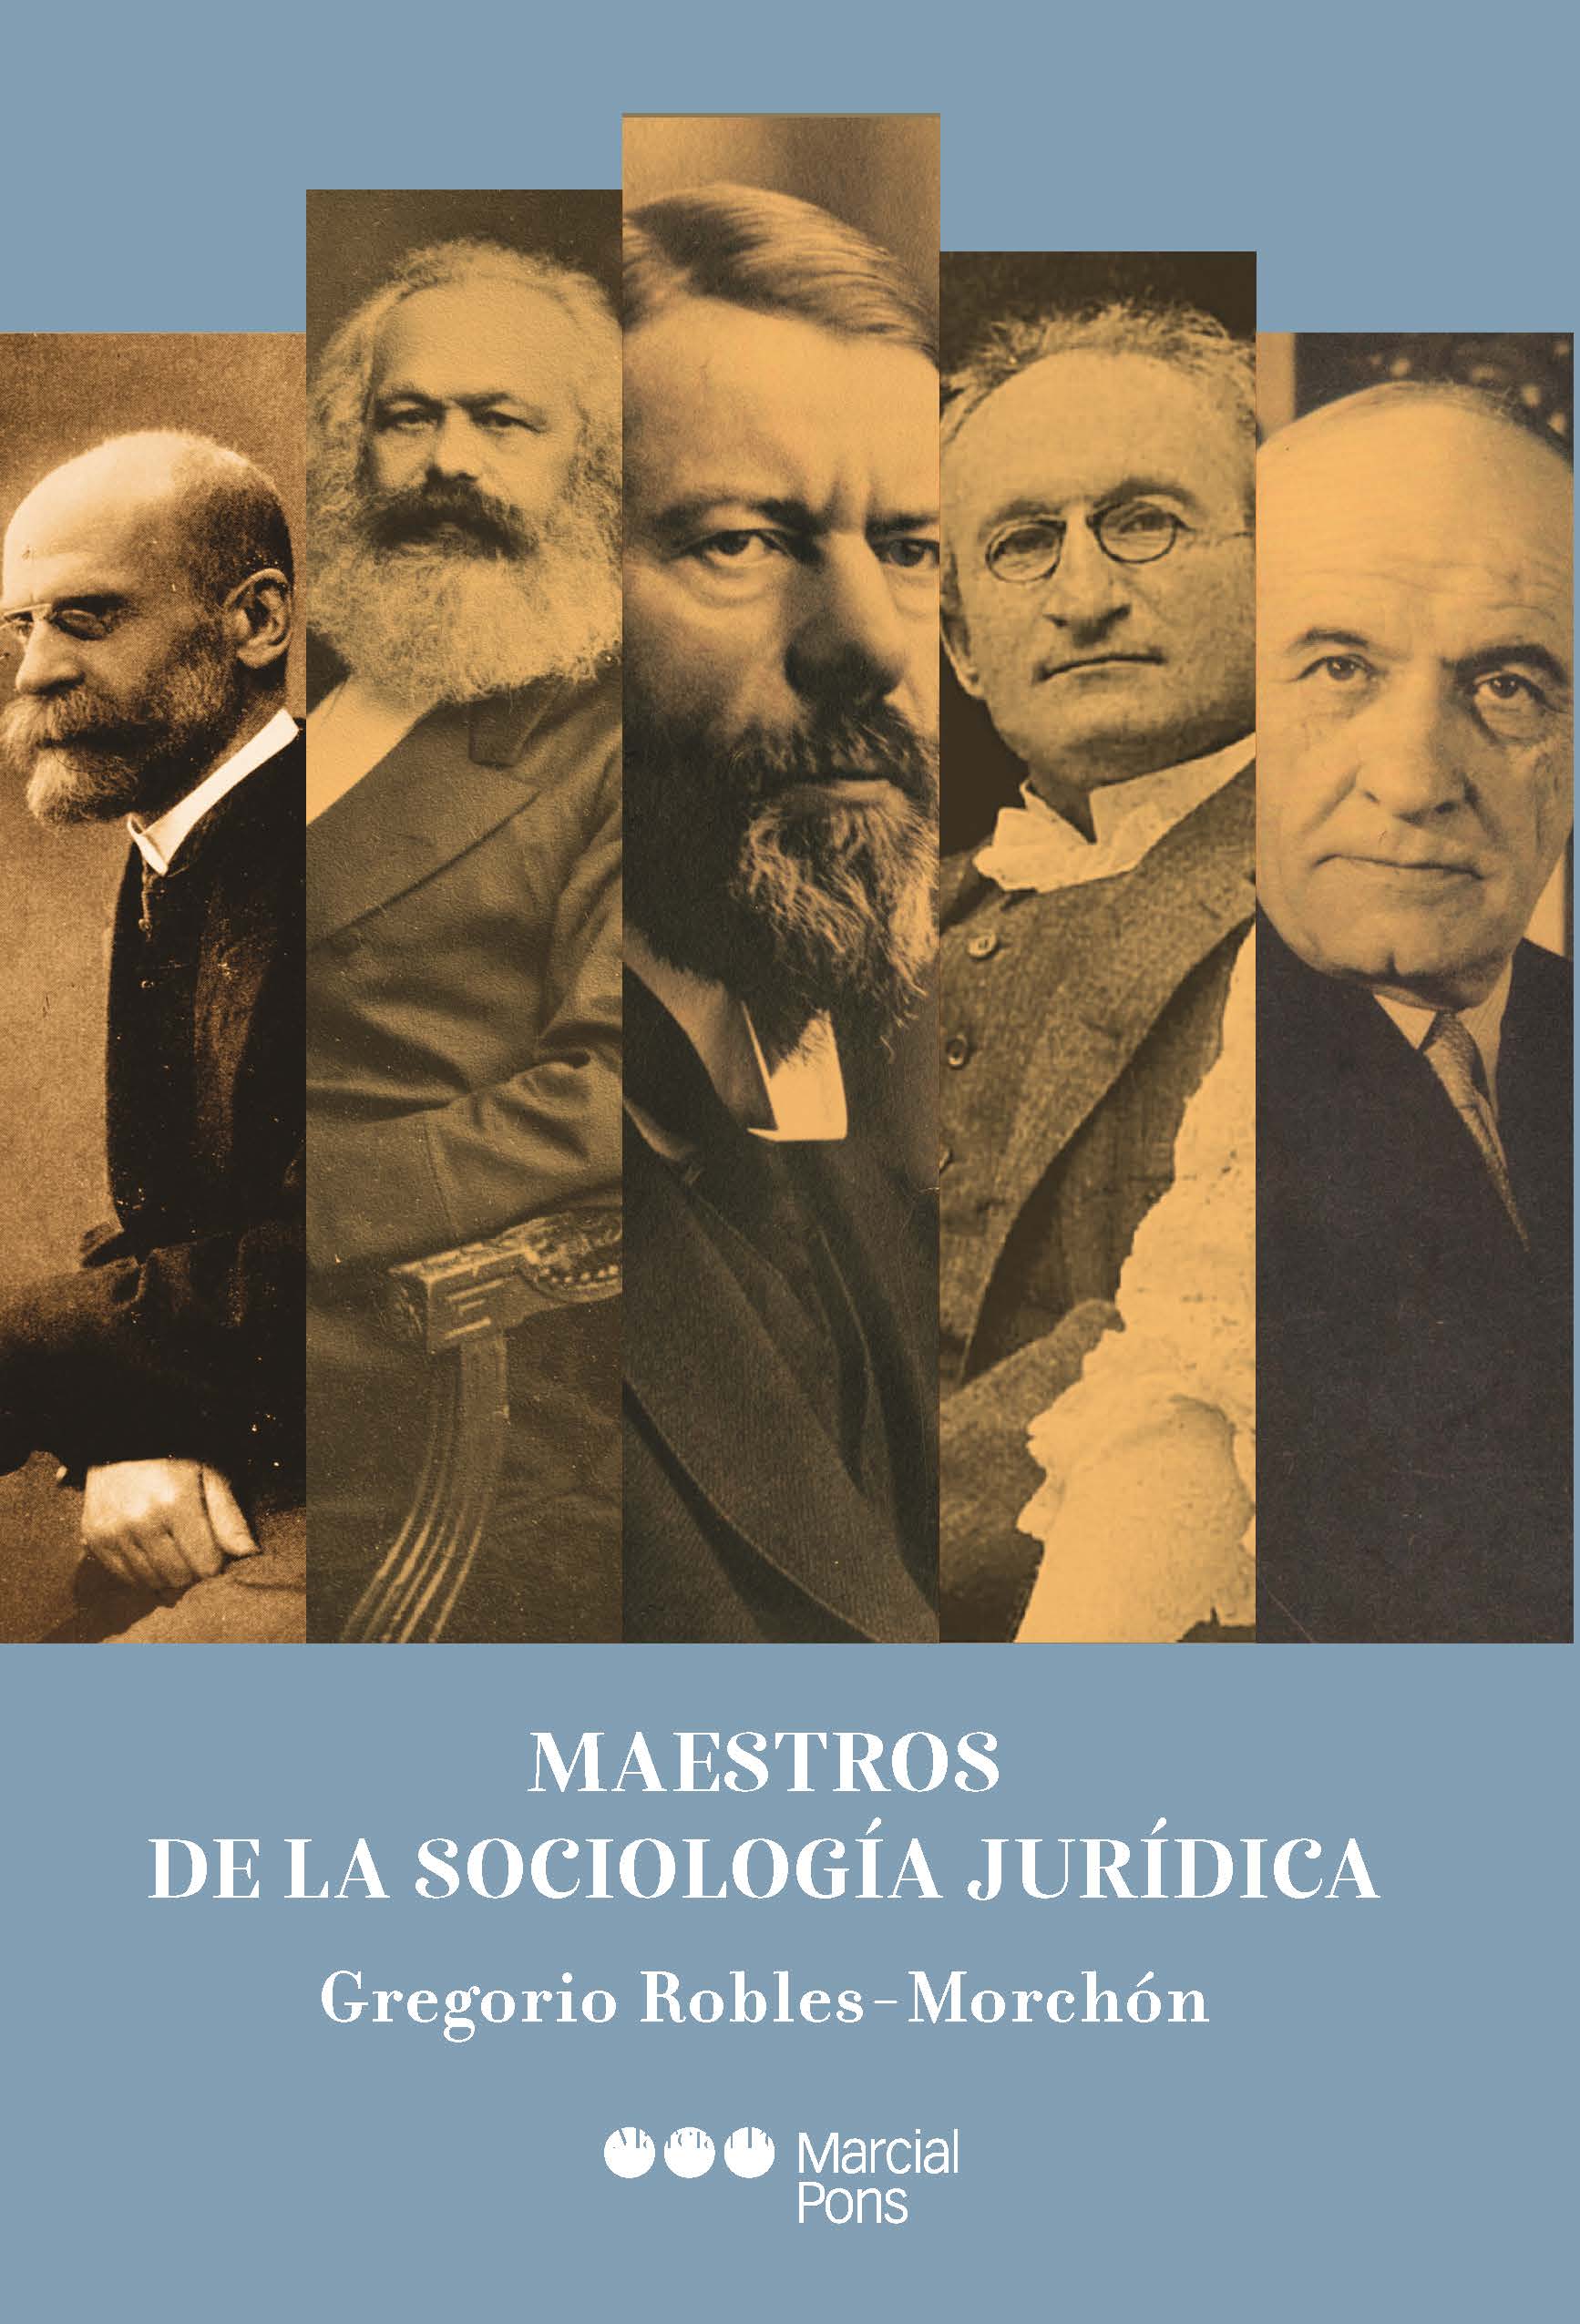 Maestros de la sociologa jurdica